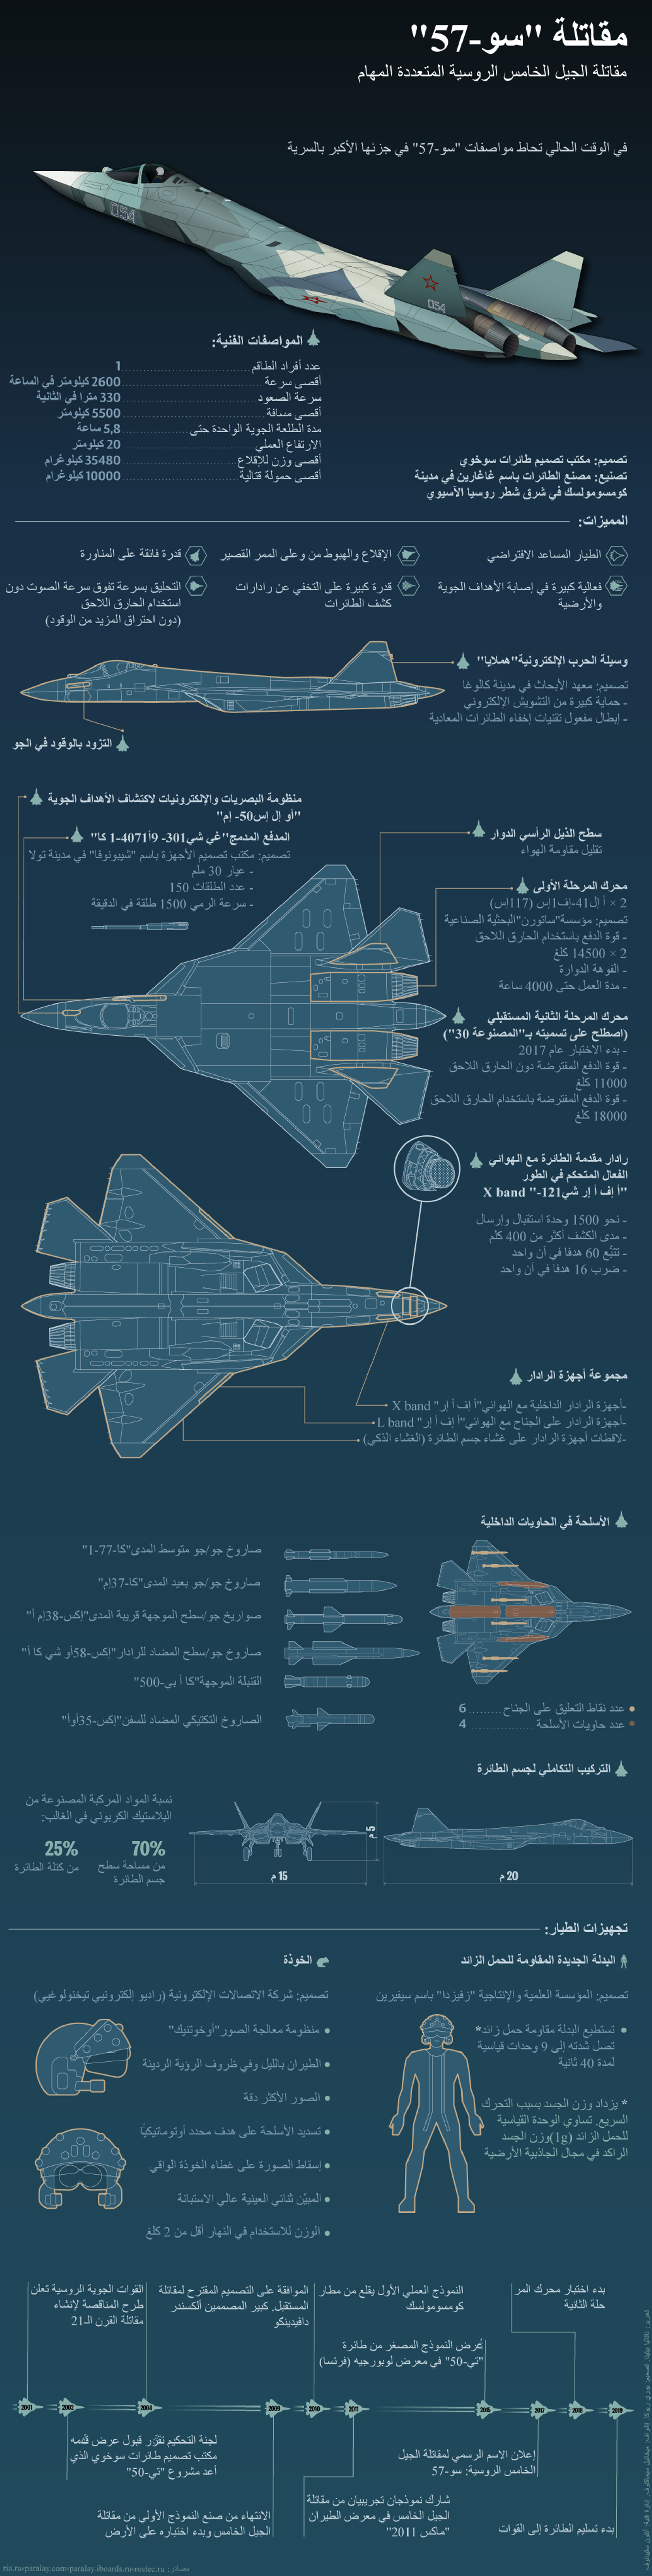 روسيا تقوم بتطوير نسخة جديدة من مقاتلة سو-57 - سبوتنيك عربي, 1920, 16.06.2021